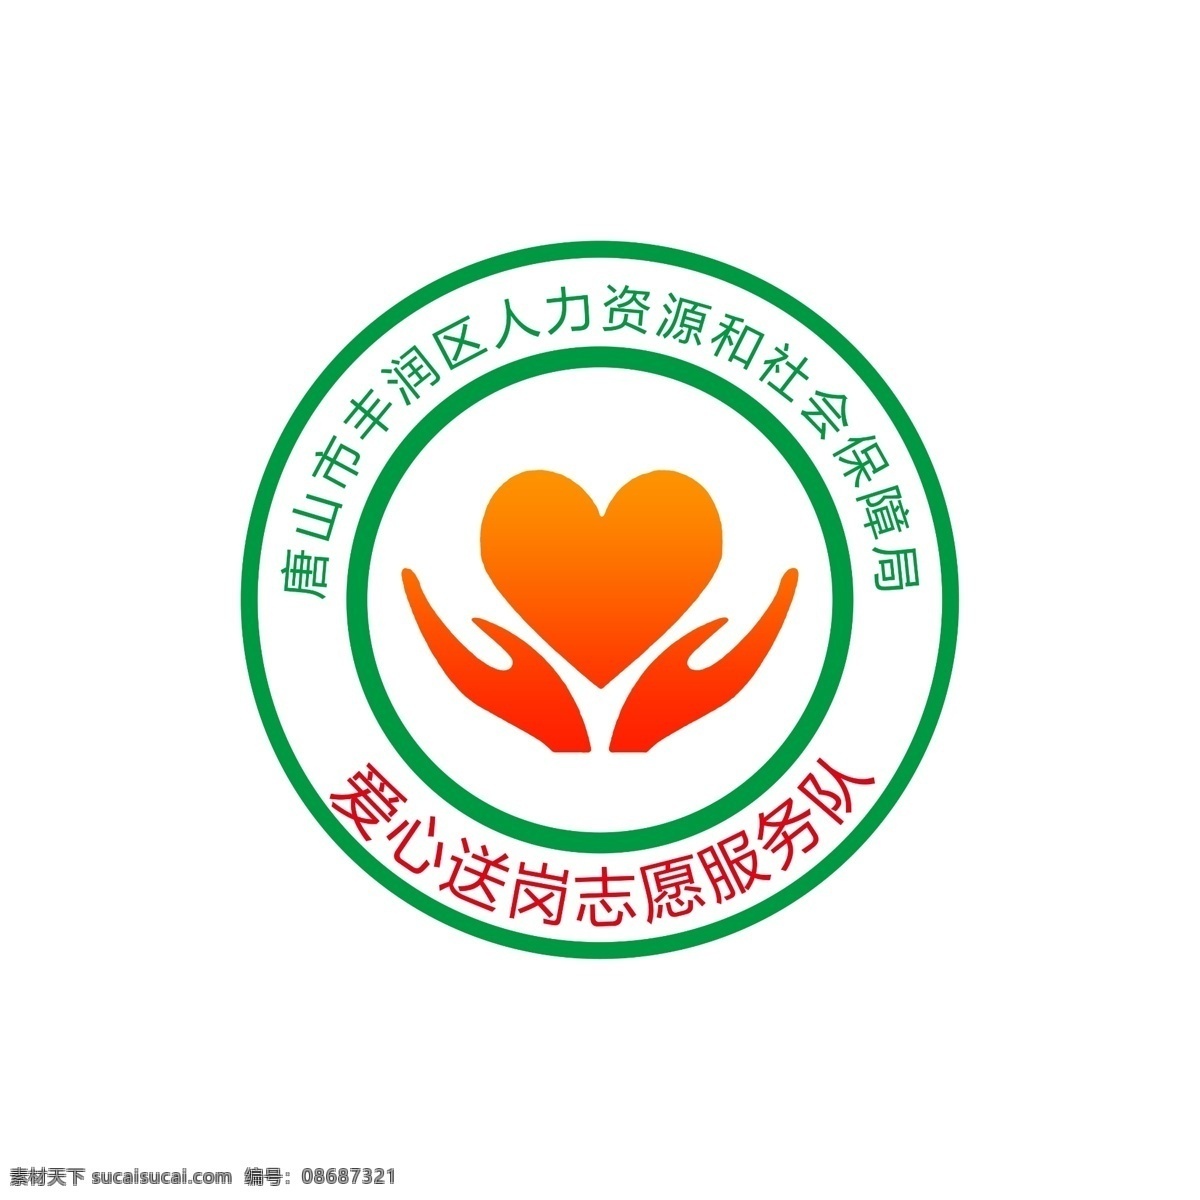 唐山市 丰润区 人力资源 社会保障 社会 保障局 爱心 送岗 志愿 服务队 logo 标 手 双手 分层